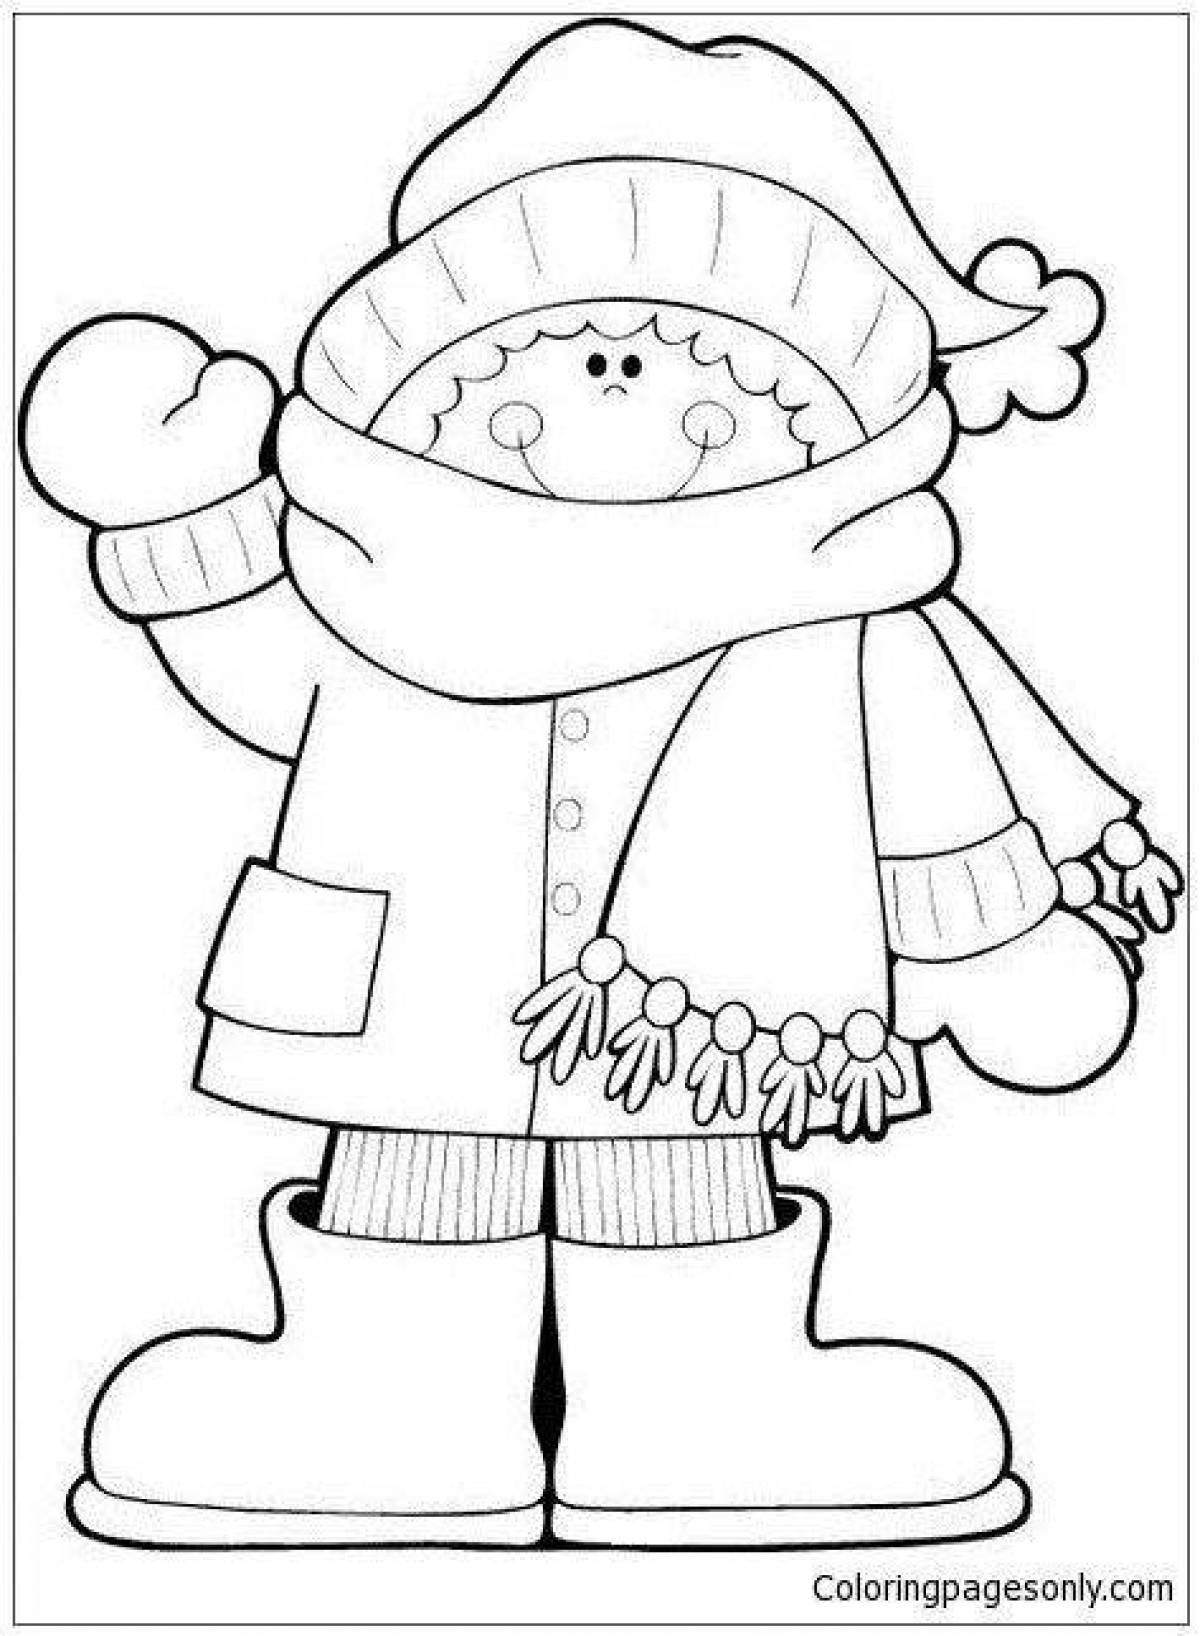 Восхитительная раскраска для детей мальчик в зимней одежде